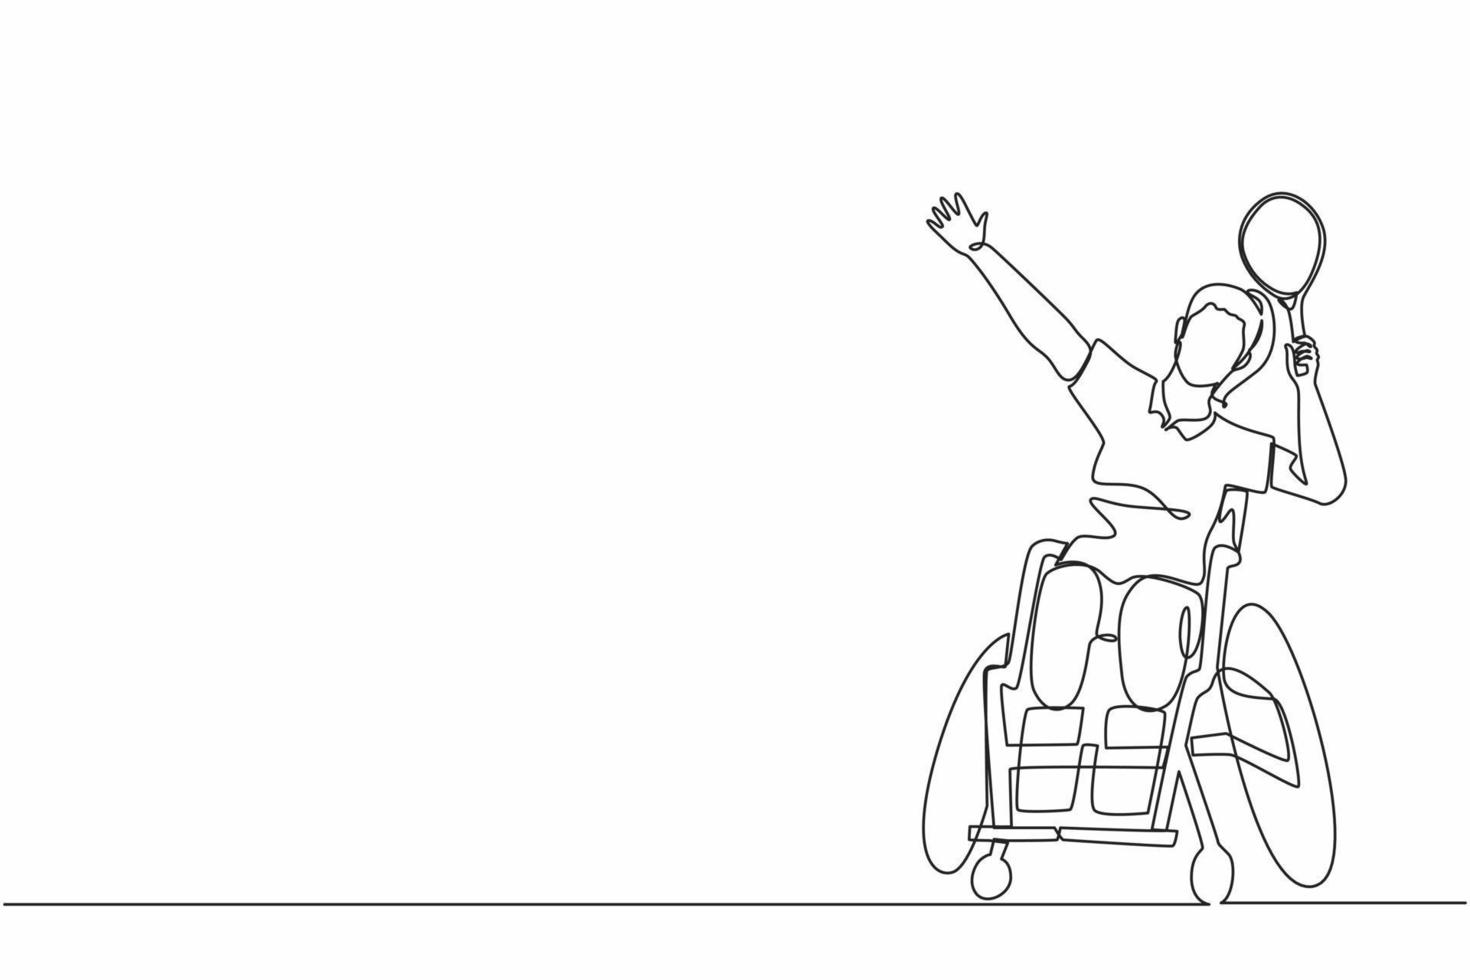 giocatore di badminton con disegno a linea singola seduto su sedia a rotelle con posa smash. le sportive disabili indossano uniformi, competizione sportiva per donne amputate. vettore grafico di disegno di linea continua